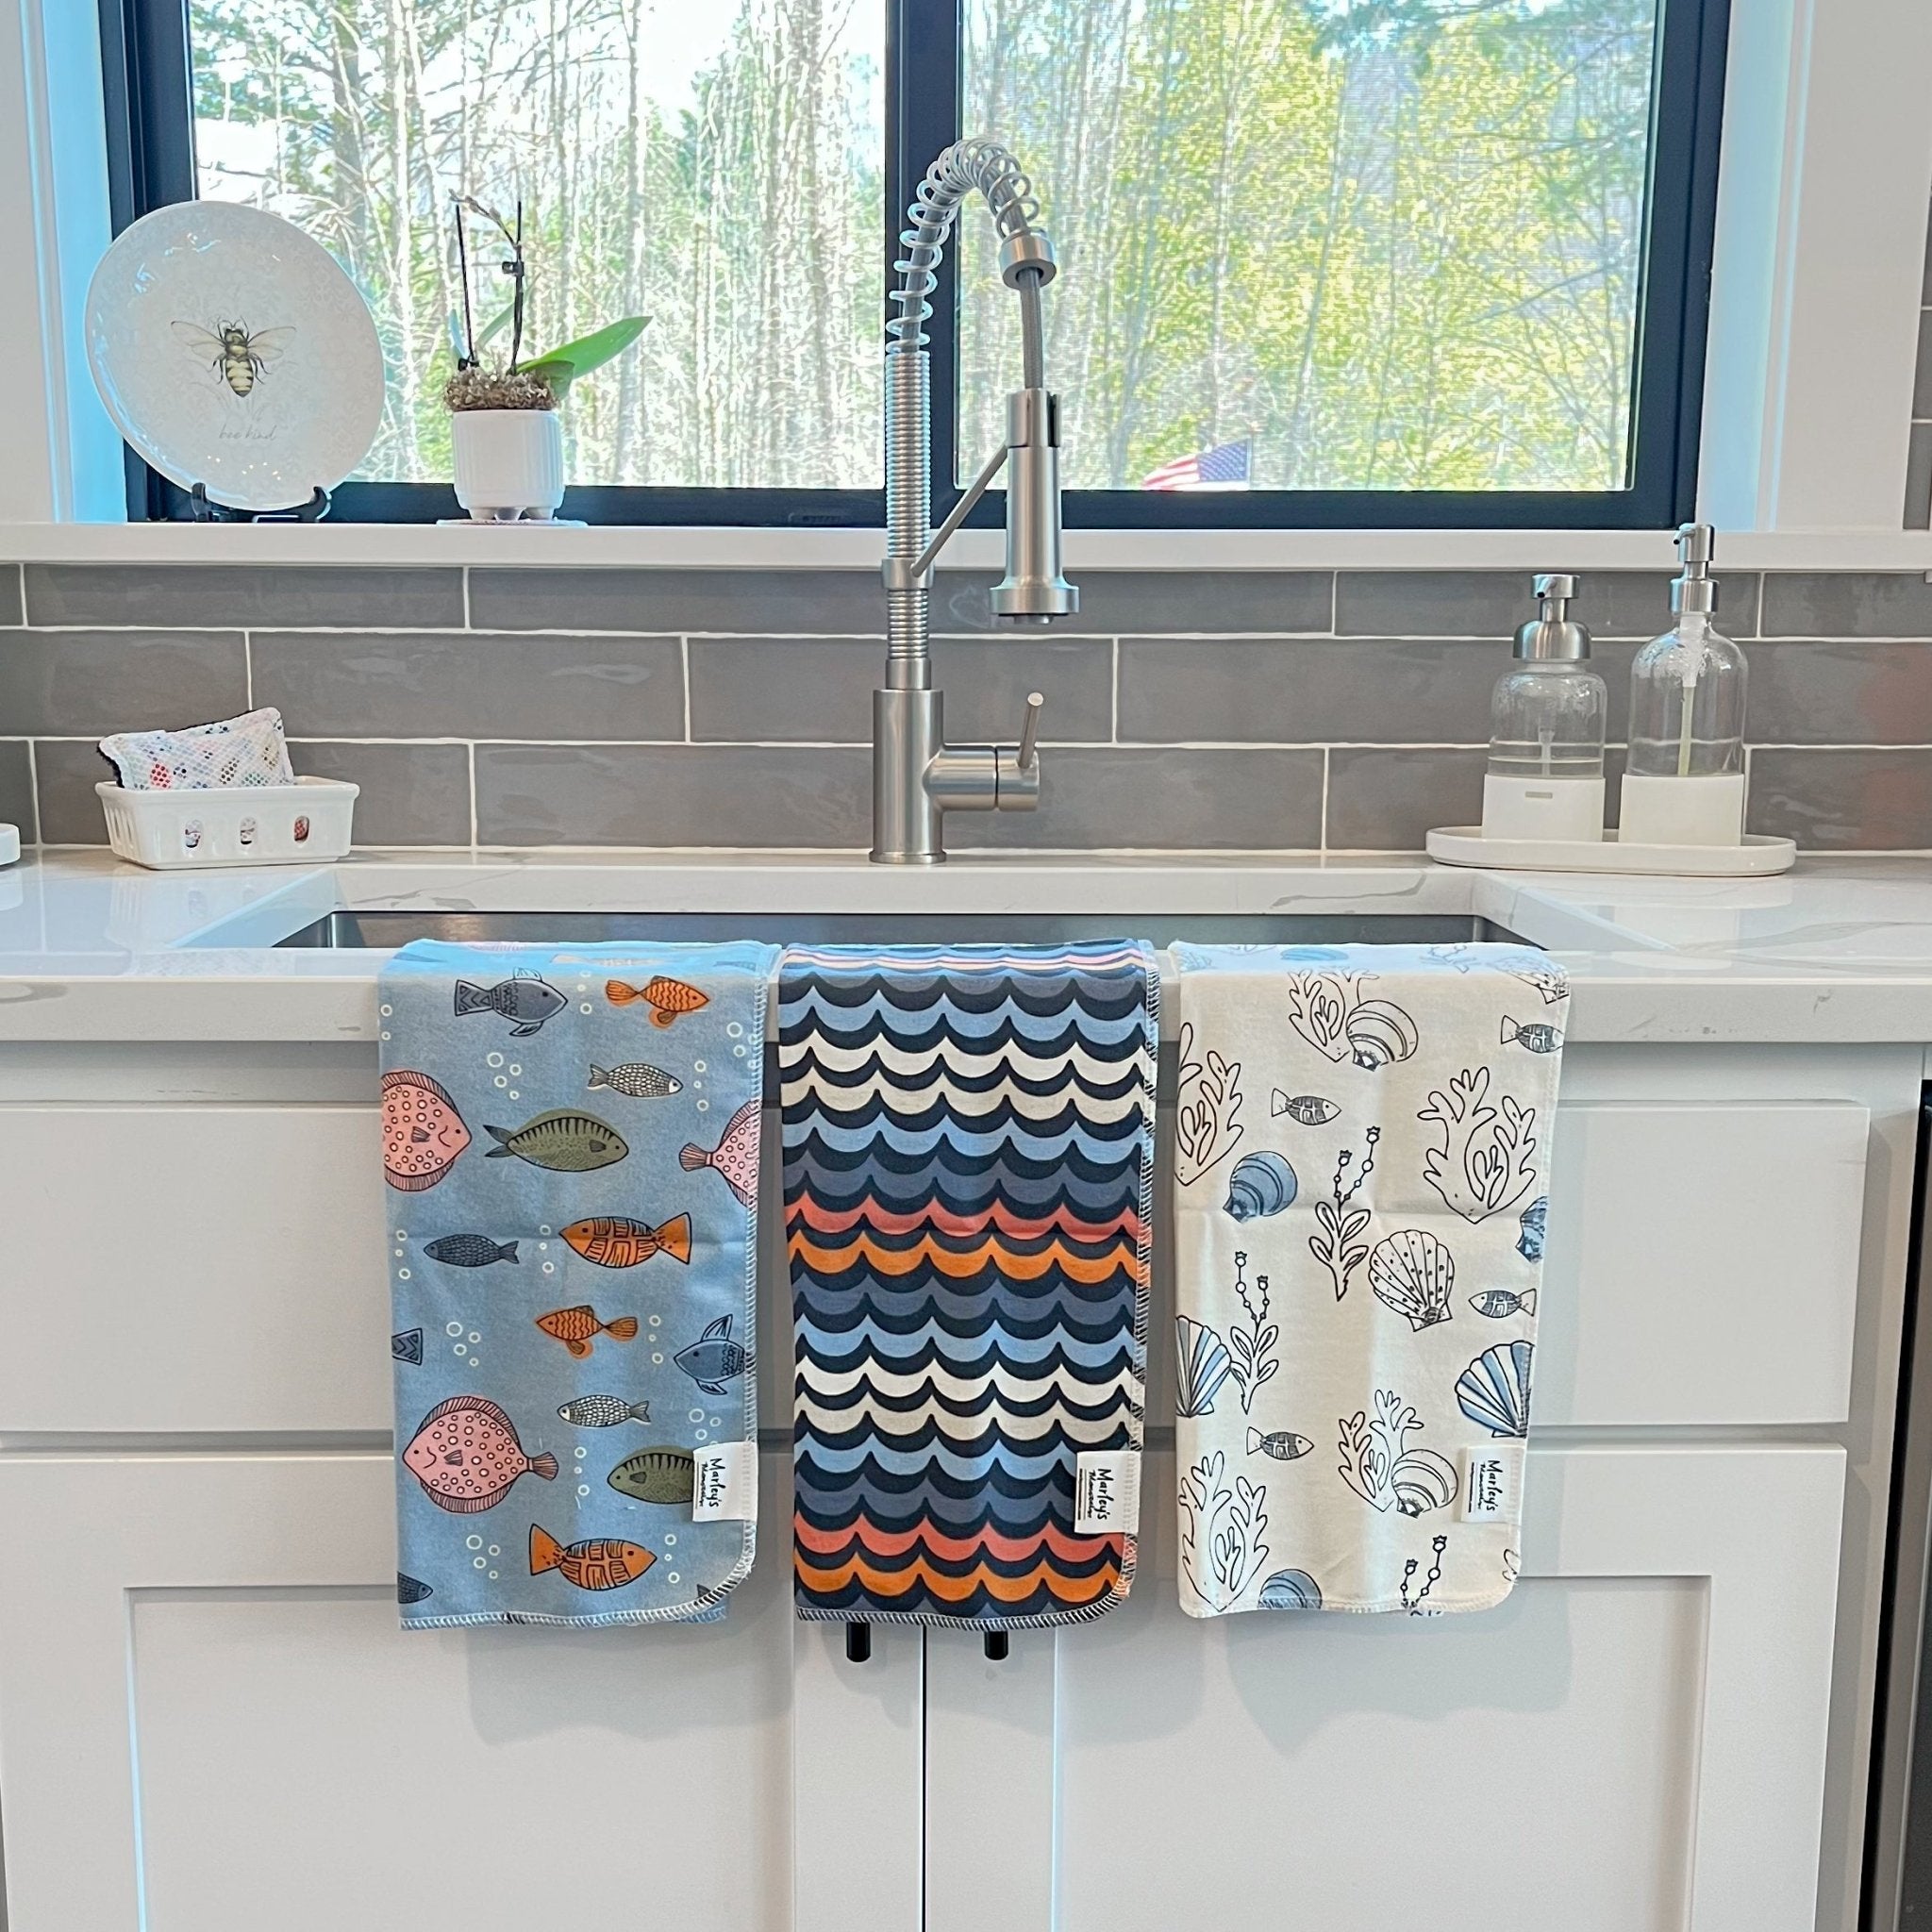 Home Decor - Kitchen - Tea Towels - Page 1 - Coastal Cottage